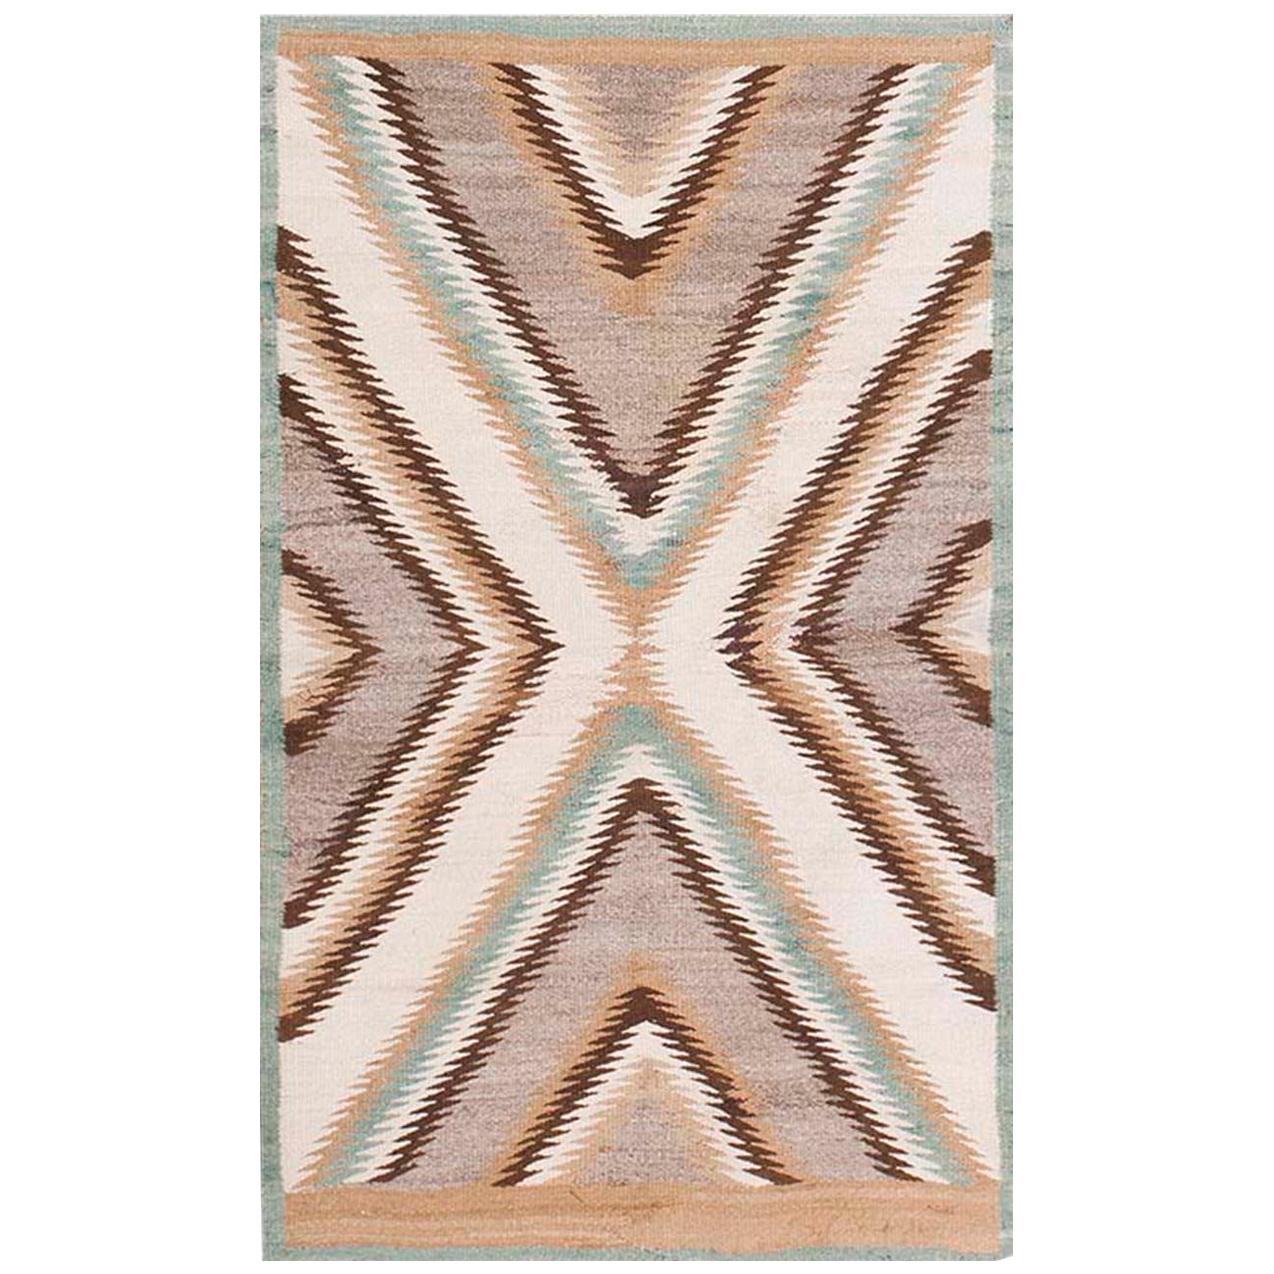 Amerikanischer Navajo-Teppich aus den 1920er Jahren ( 2'9" x 4" - 83 x 132 cm)